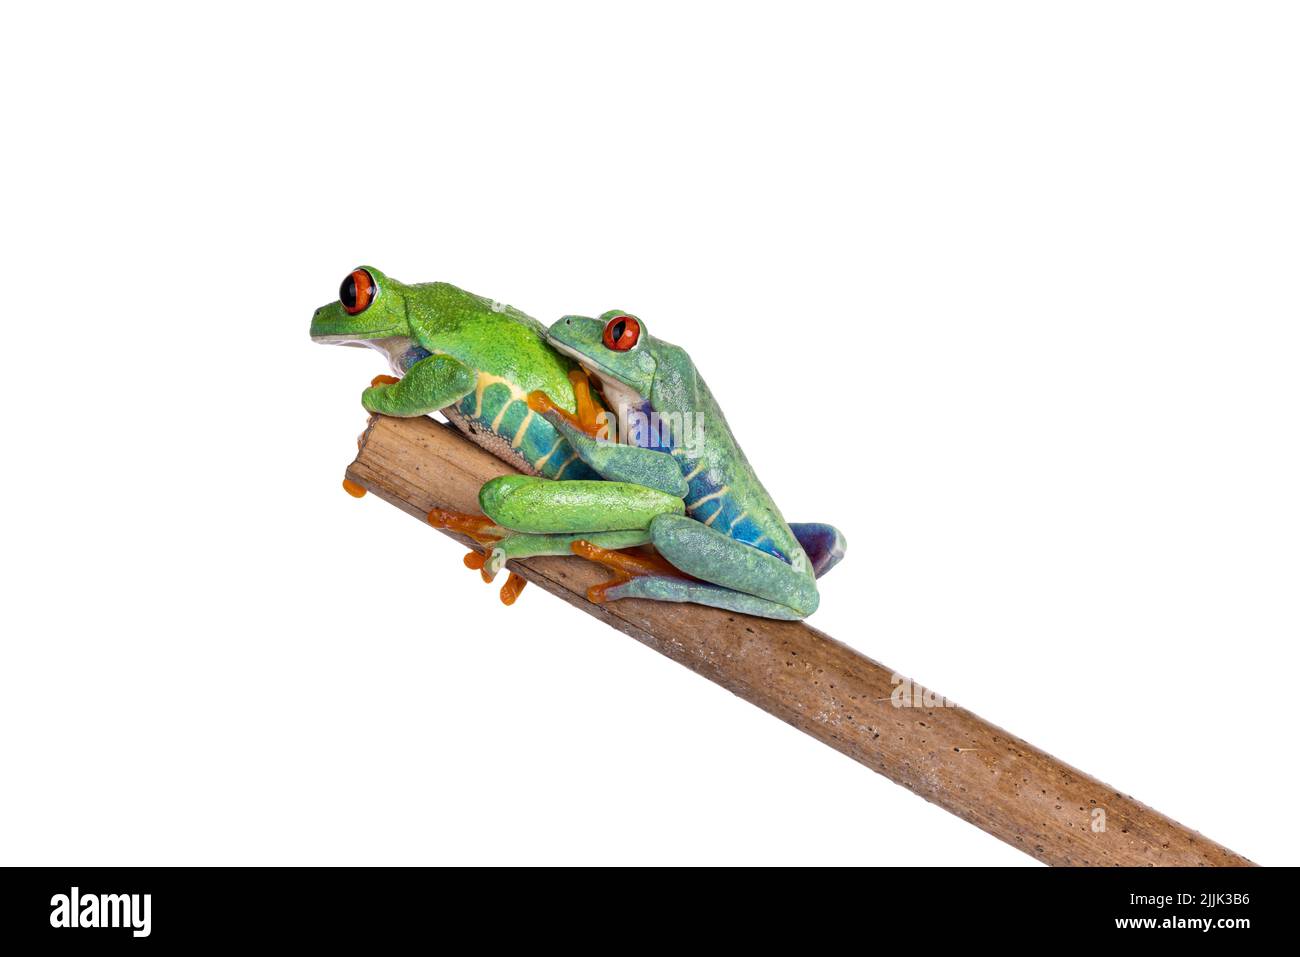 Deux grenouilles d'arbre à yeux rouges, alias Agalychnis callidryas, assises sur un bâton de bois se tenant l'un l'autre. En regardant loin de l'appareil photo. Isolé sur un backgroun blanc Banque D'Images